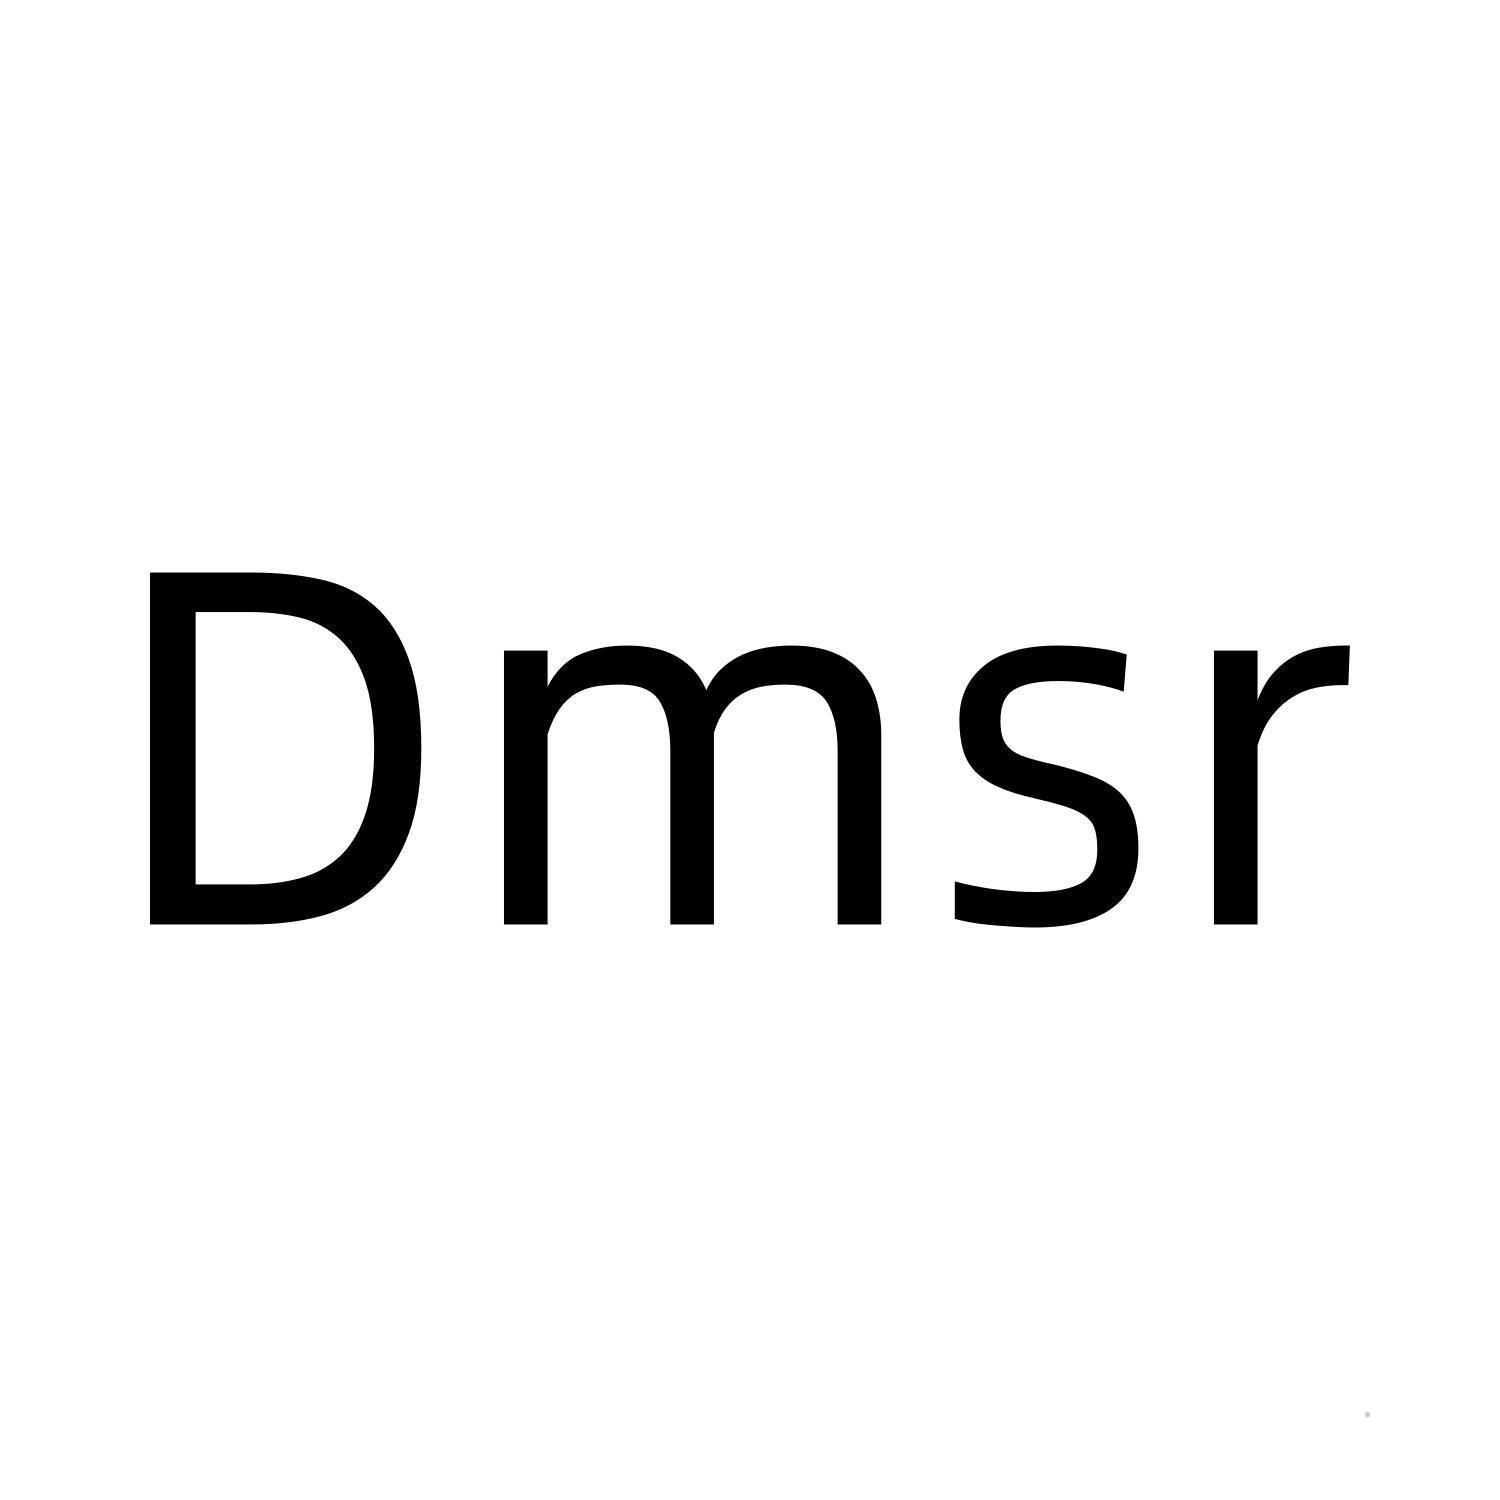 DMSR